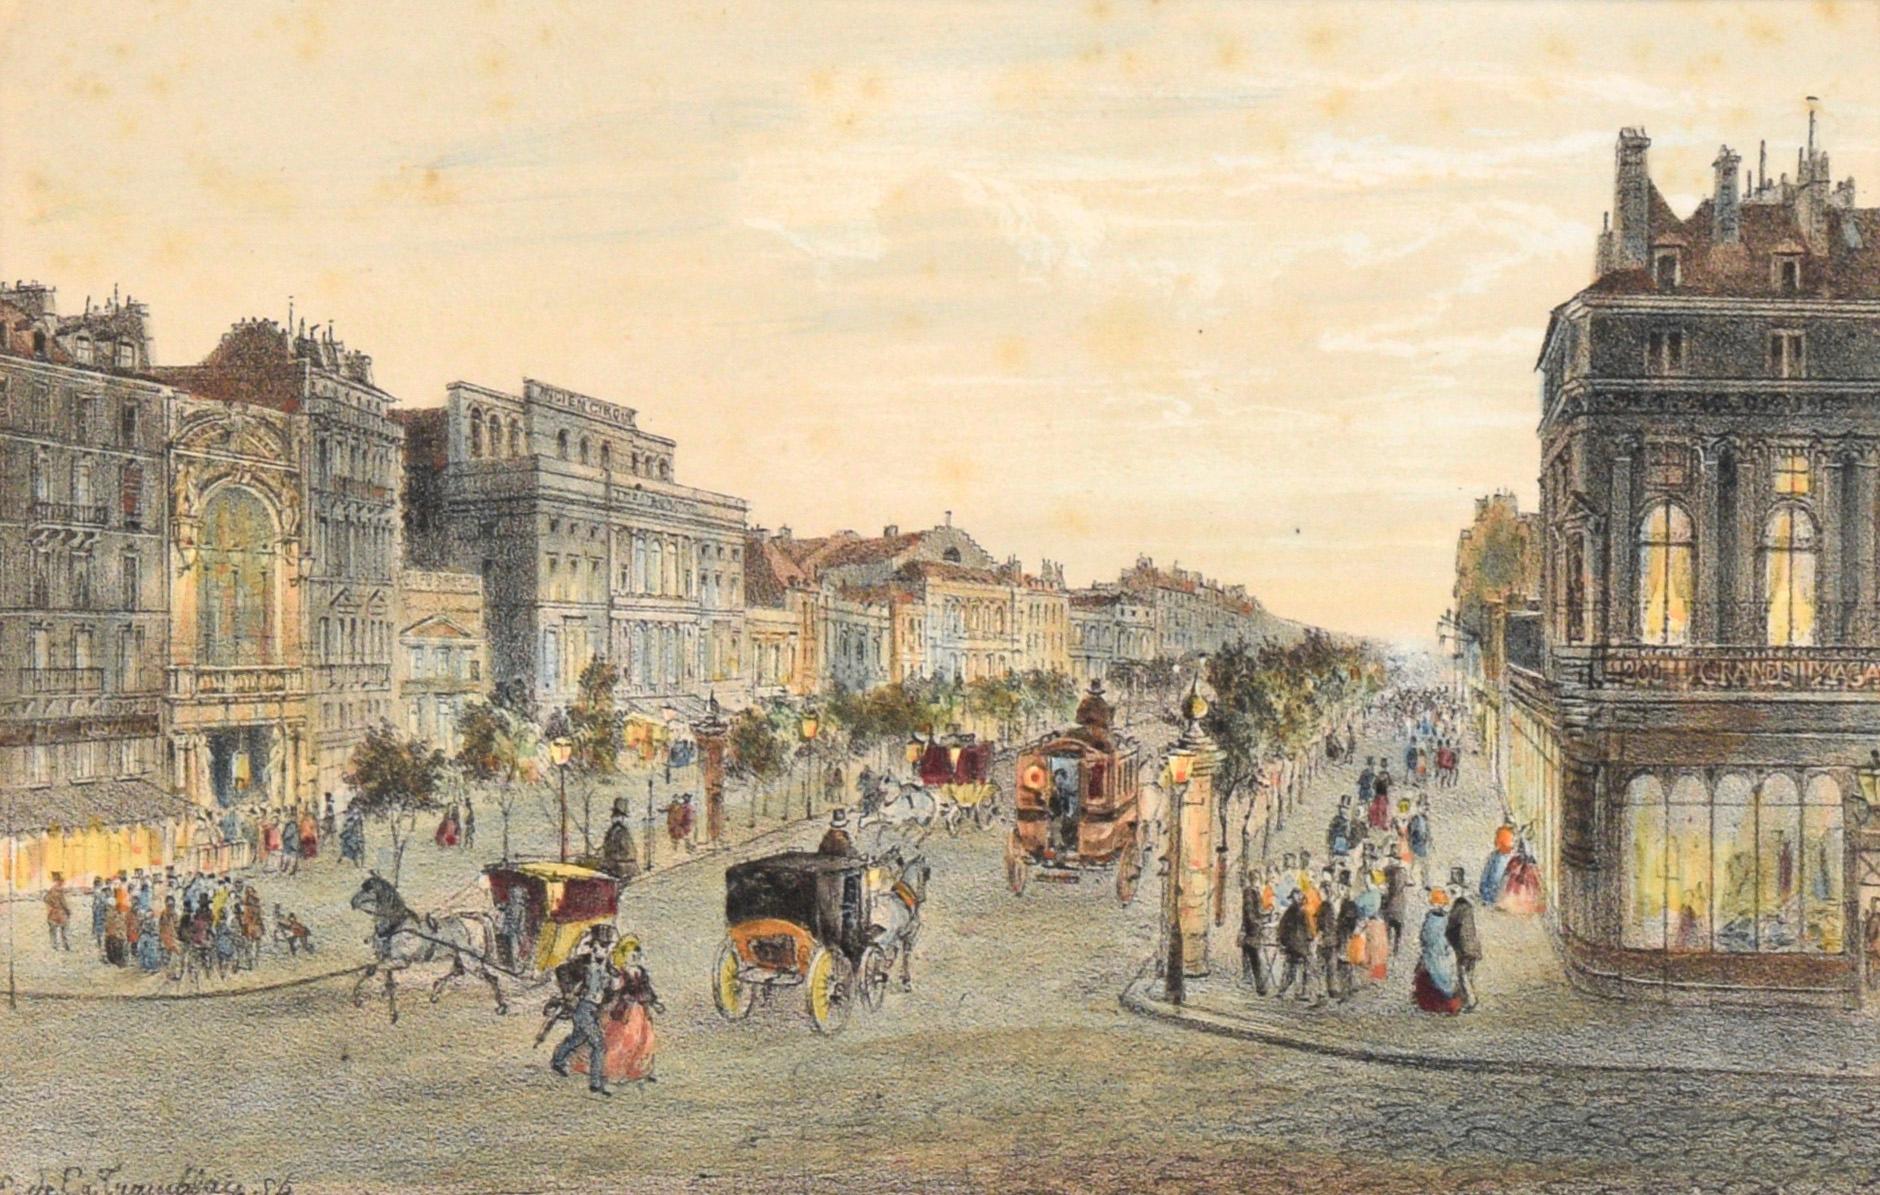 Boulevard du Temple, Paris, France - Hand Colored Lithograph - Print by Louis Valentin Emile de La Tramblais